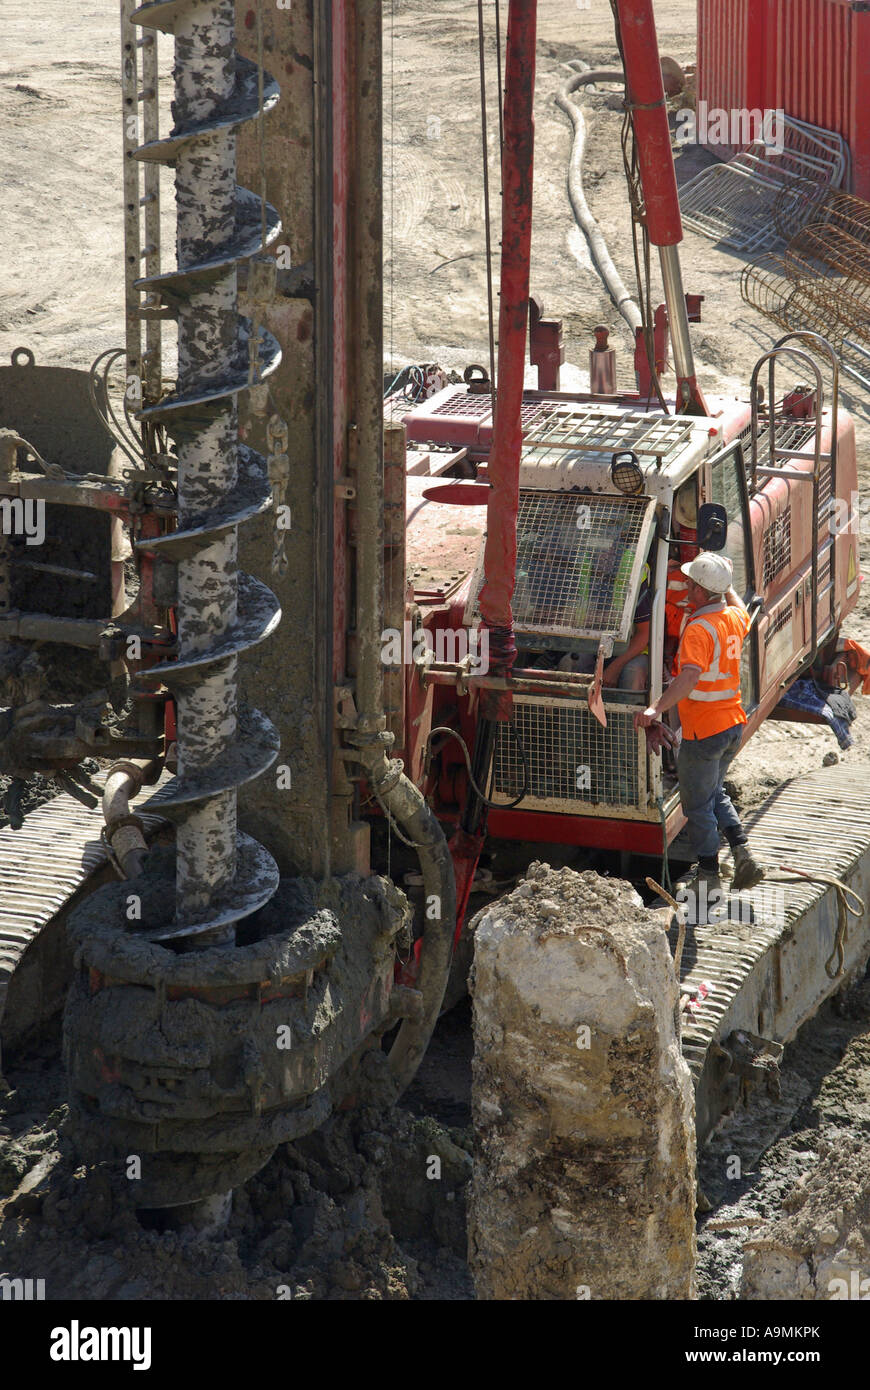 Grundlagen langweilig Schnecke auf große piling Rigs Maschine neben Betonpfahl & Arbeiter stehen auf Caterpillar Gleisbau Baustelle London UK Stockfoto